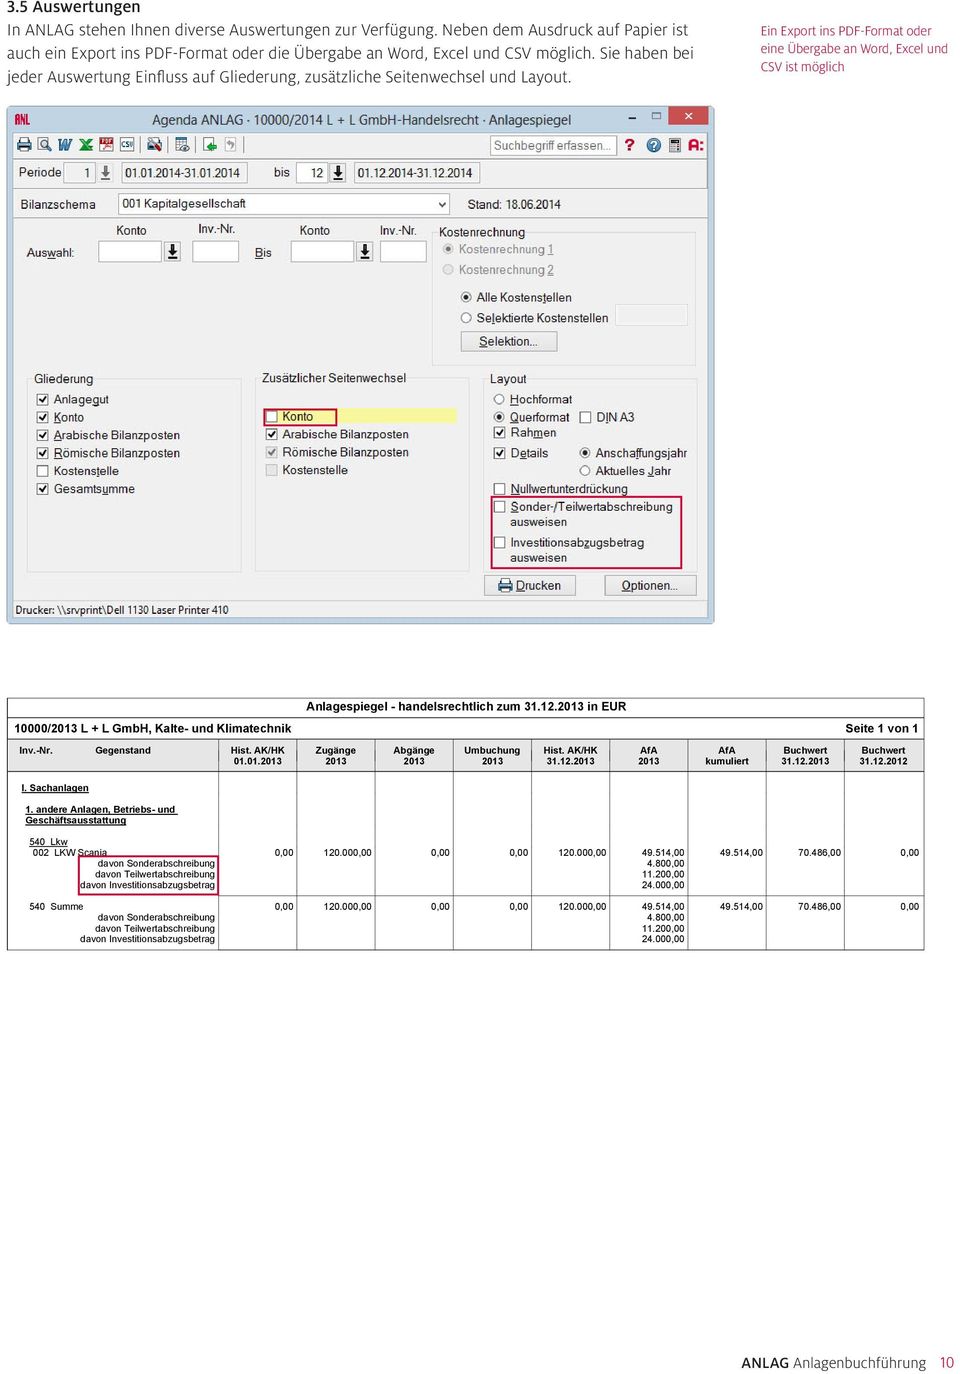 Ei Export is PDF-Format oder eie Übergabe a Word, Excel ud CSV ist möglich 10000/2013 L + L GmbH, Kalte- ud Klimatechik Alagespiegel - hadelsrechtlich zum 31.12.2013 i EUR 10000 Seite 1 vo 1 Iv.-Nr.